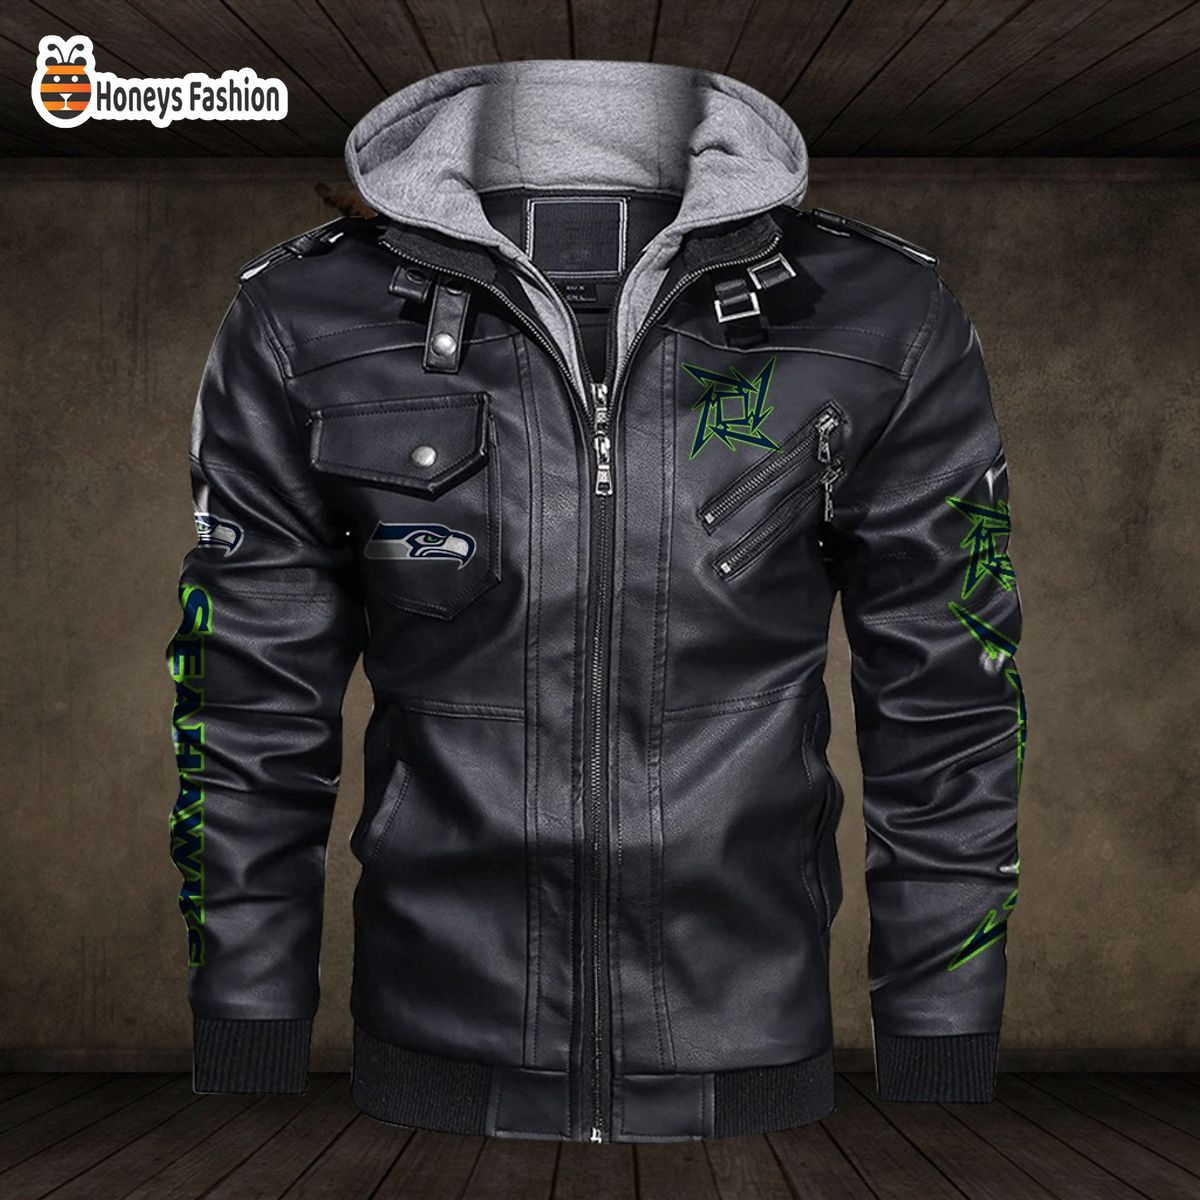 Seattle Seahawks NFL Metallica 2D PU Leather Jacket